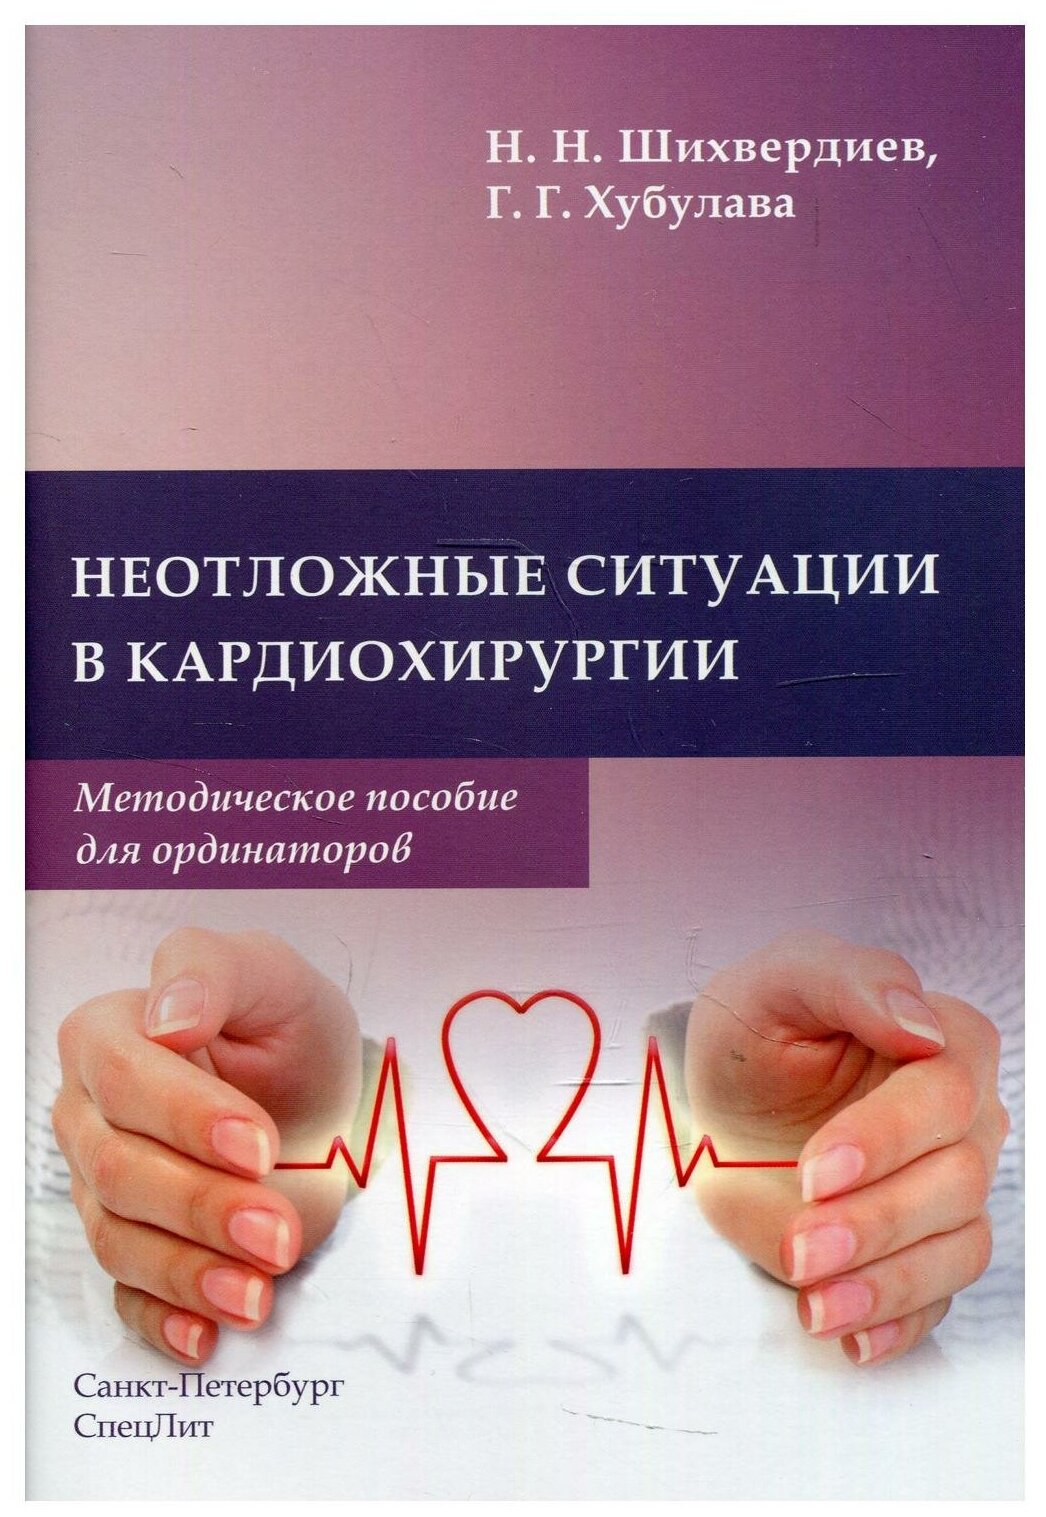 Неотложные ситуации в кардиохирургии Методическое пособие для ординаторов - фото №1